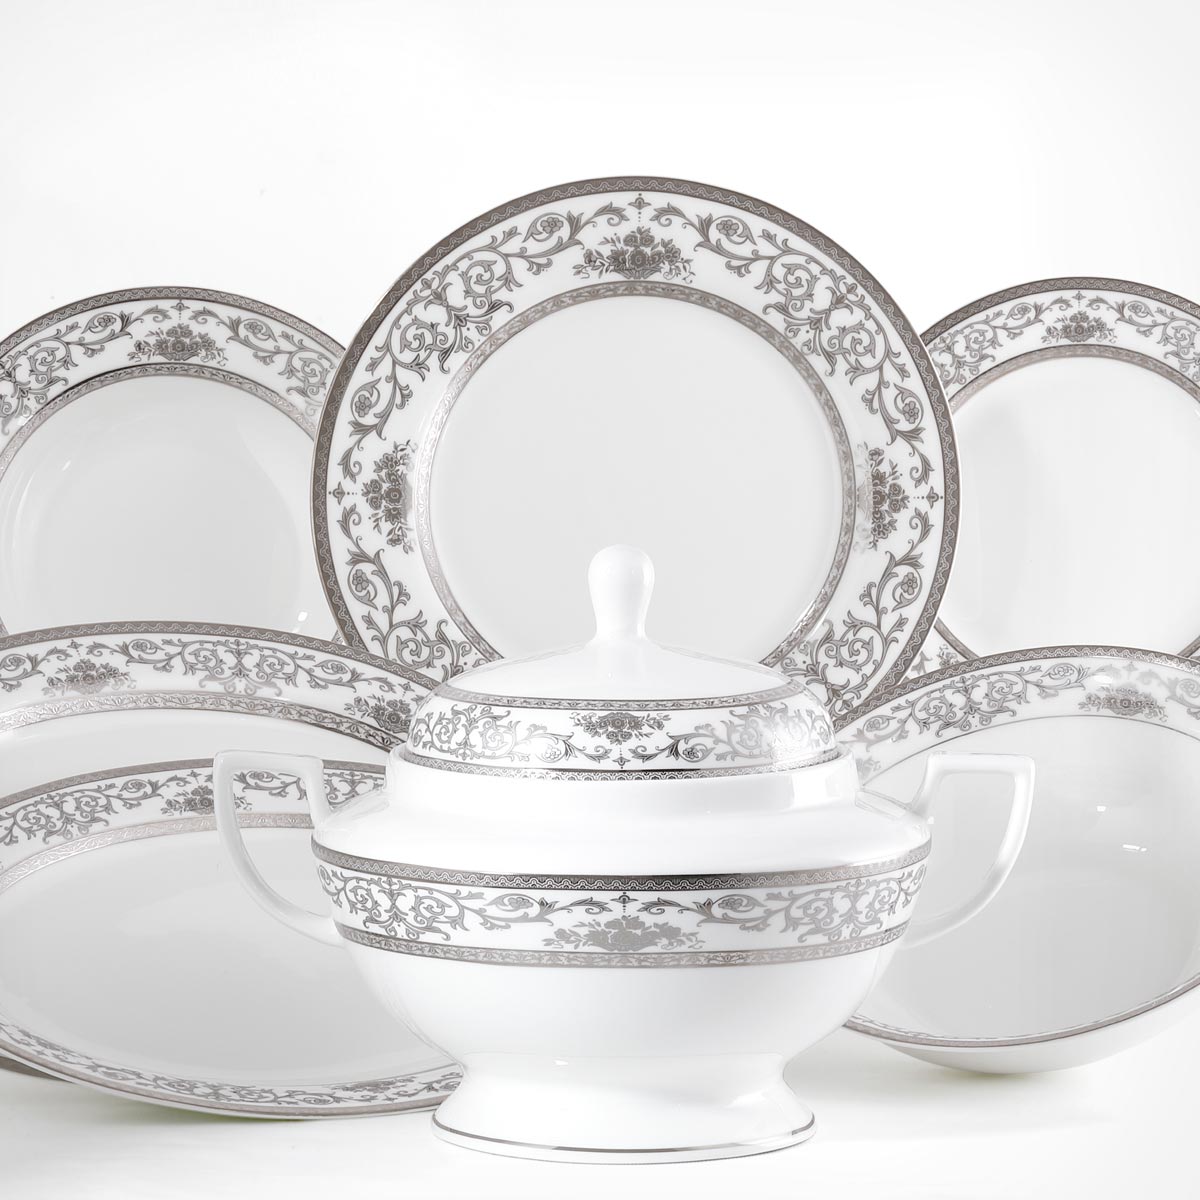 Servizio piatti con decorazione classica importante in argento porcellana trasparente fine bone china - San Pietroburgo